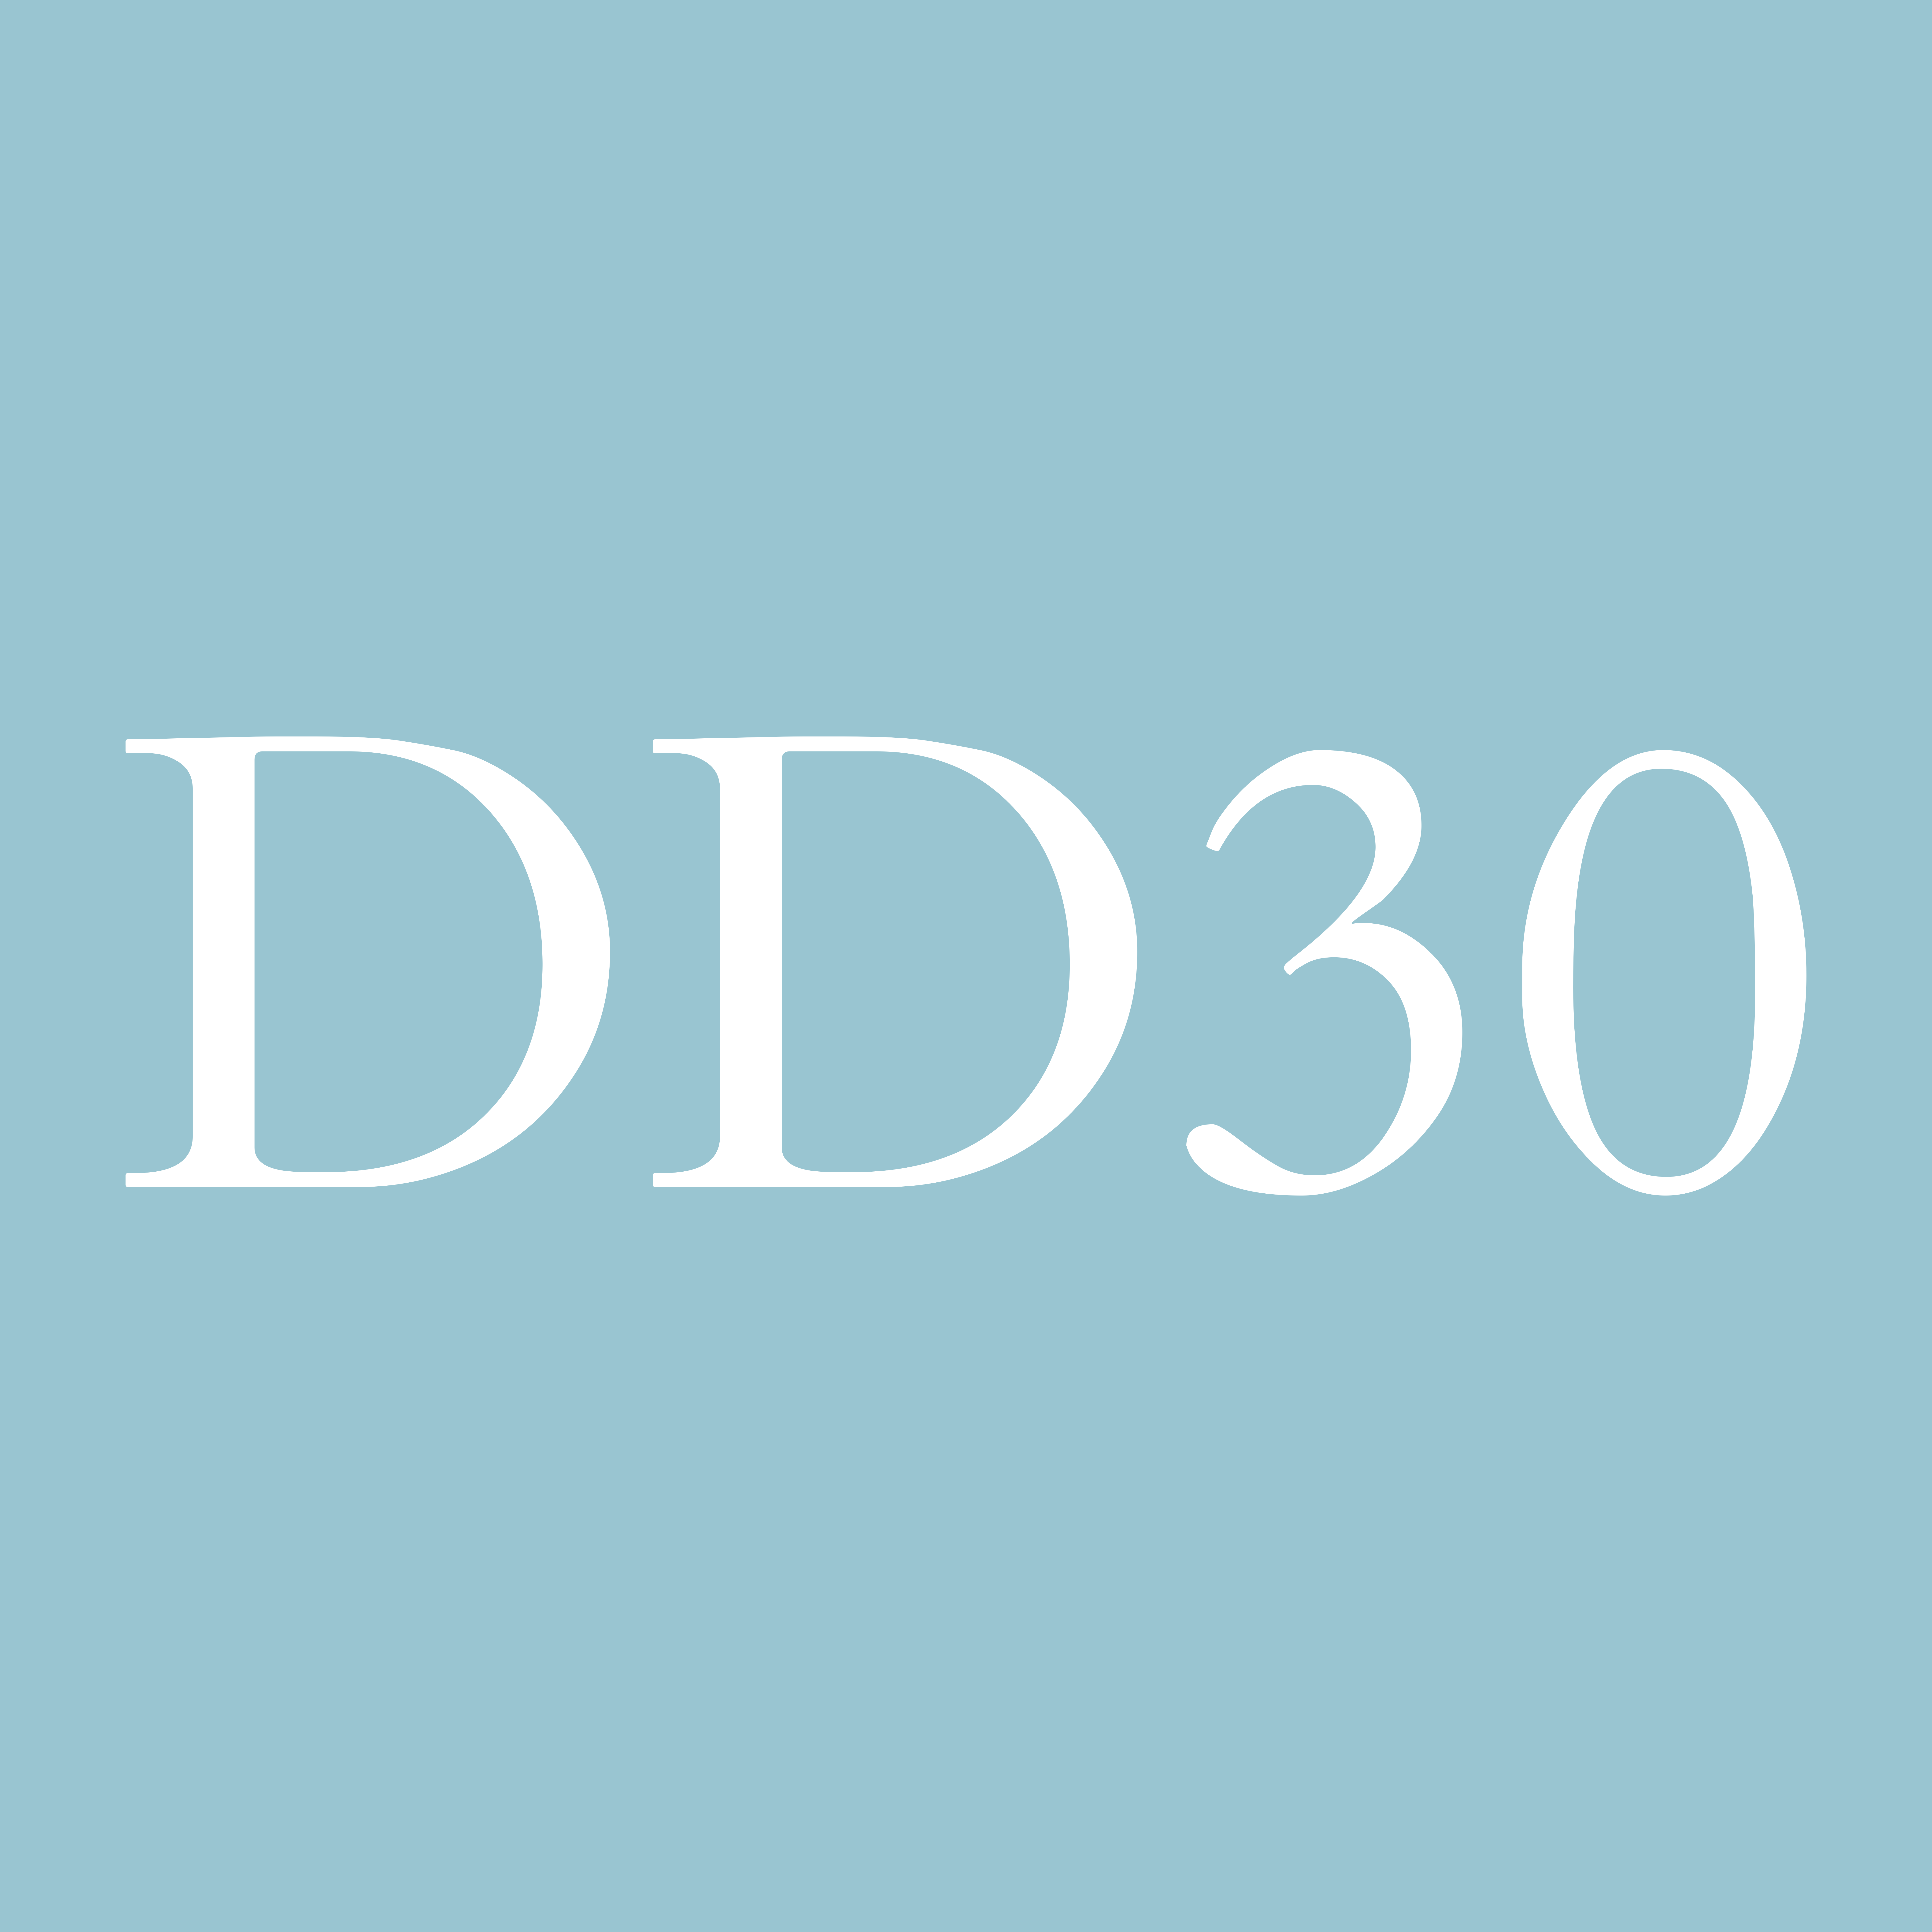 dd30-logo